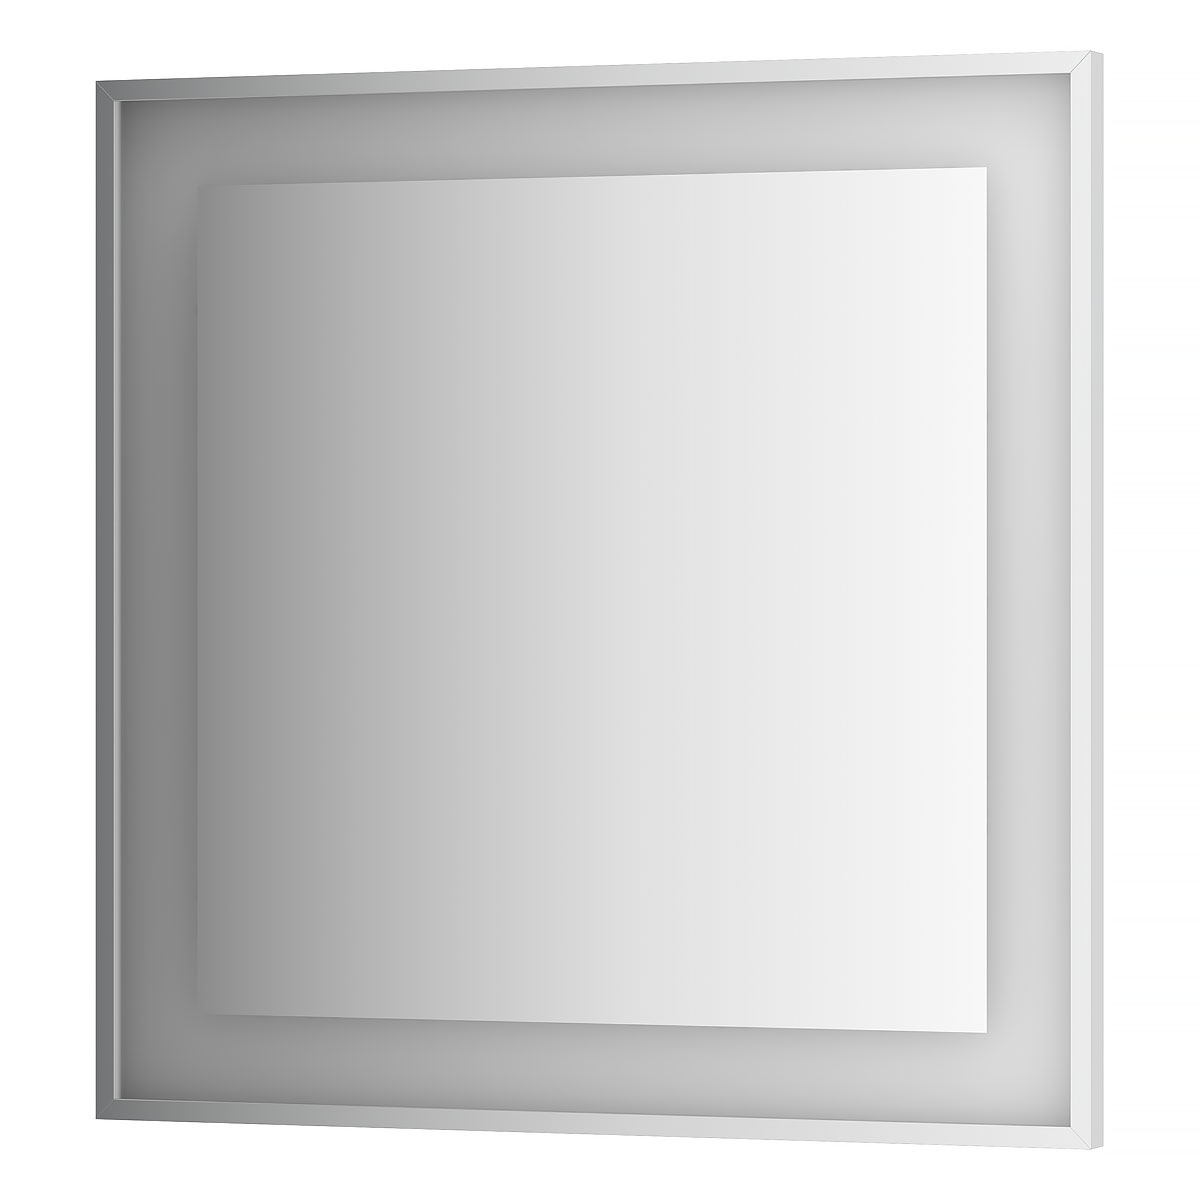 Зеркало в багетной раме со встроенной Led-подсветкой Evoform BY 2211, 90х90 3000 К зеркало evoform в багетной раме 70х70см bx 0664 bx 0664